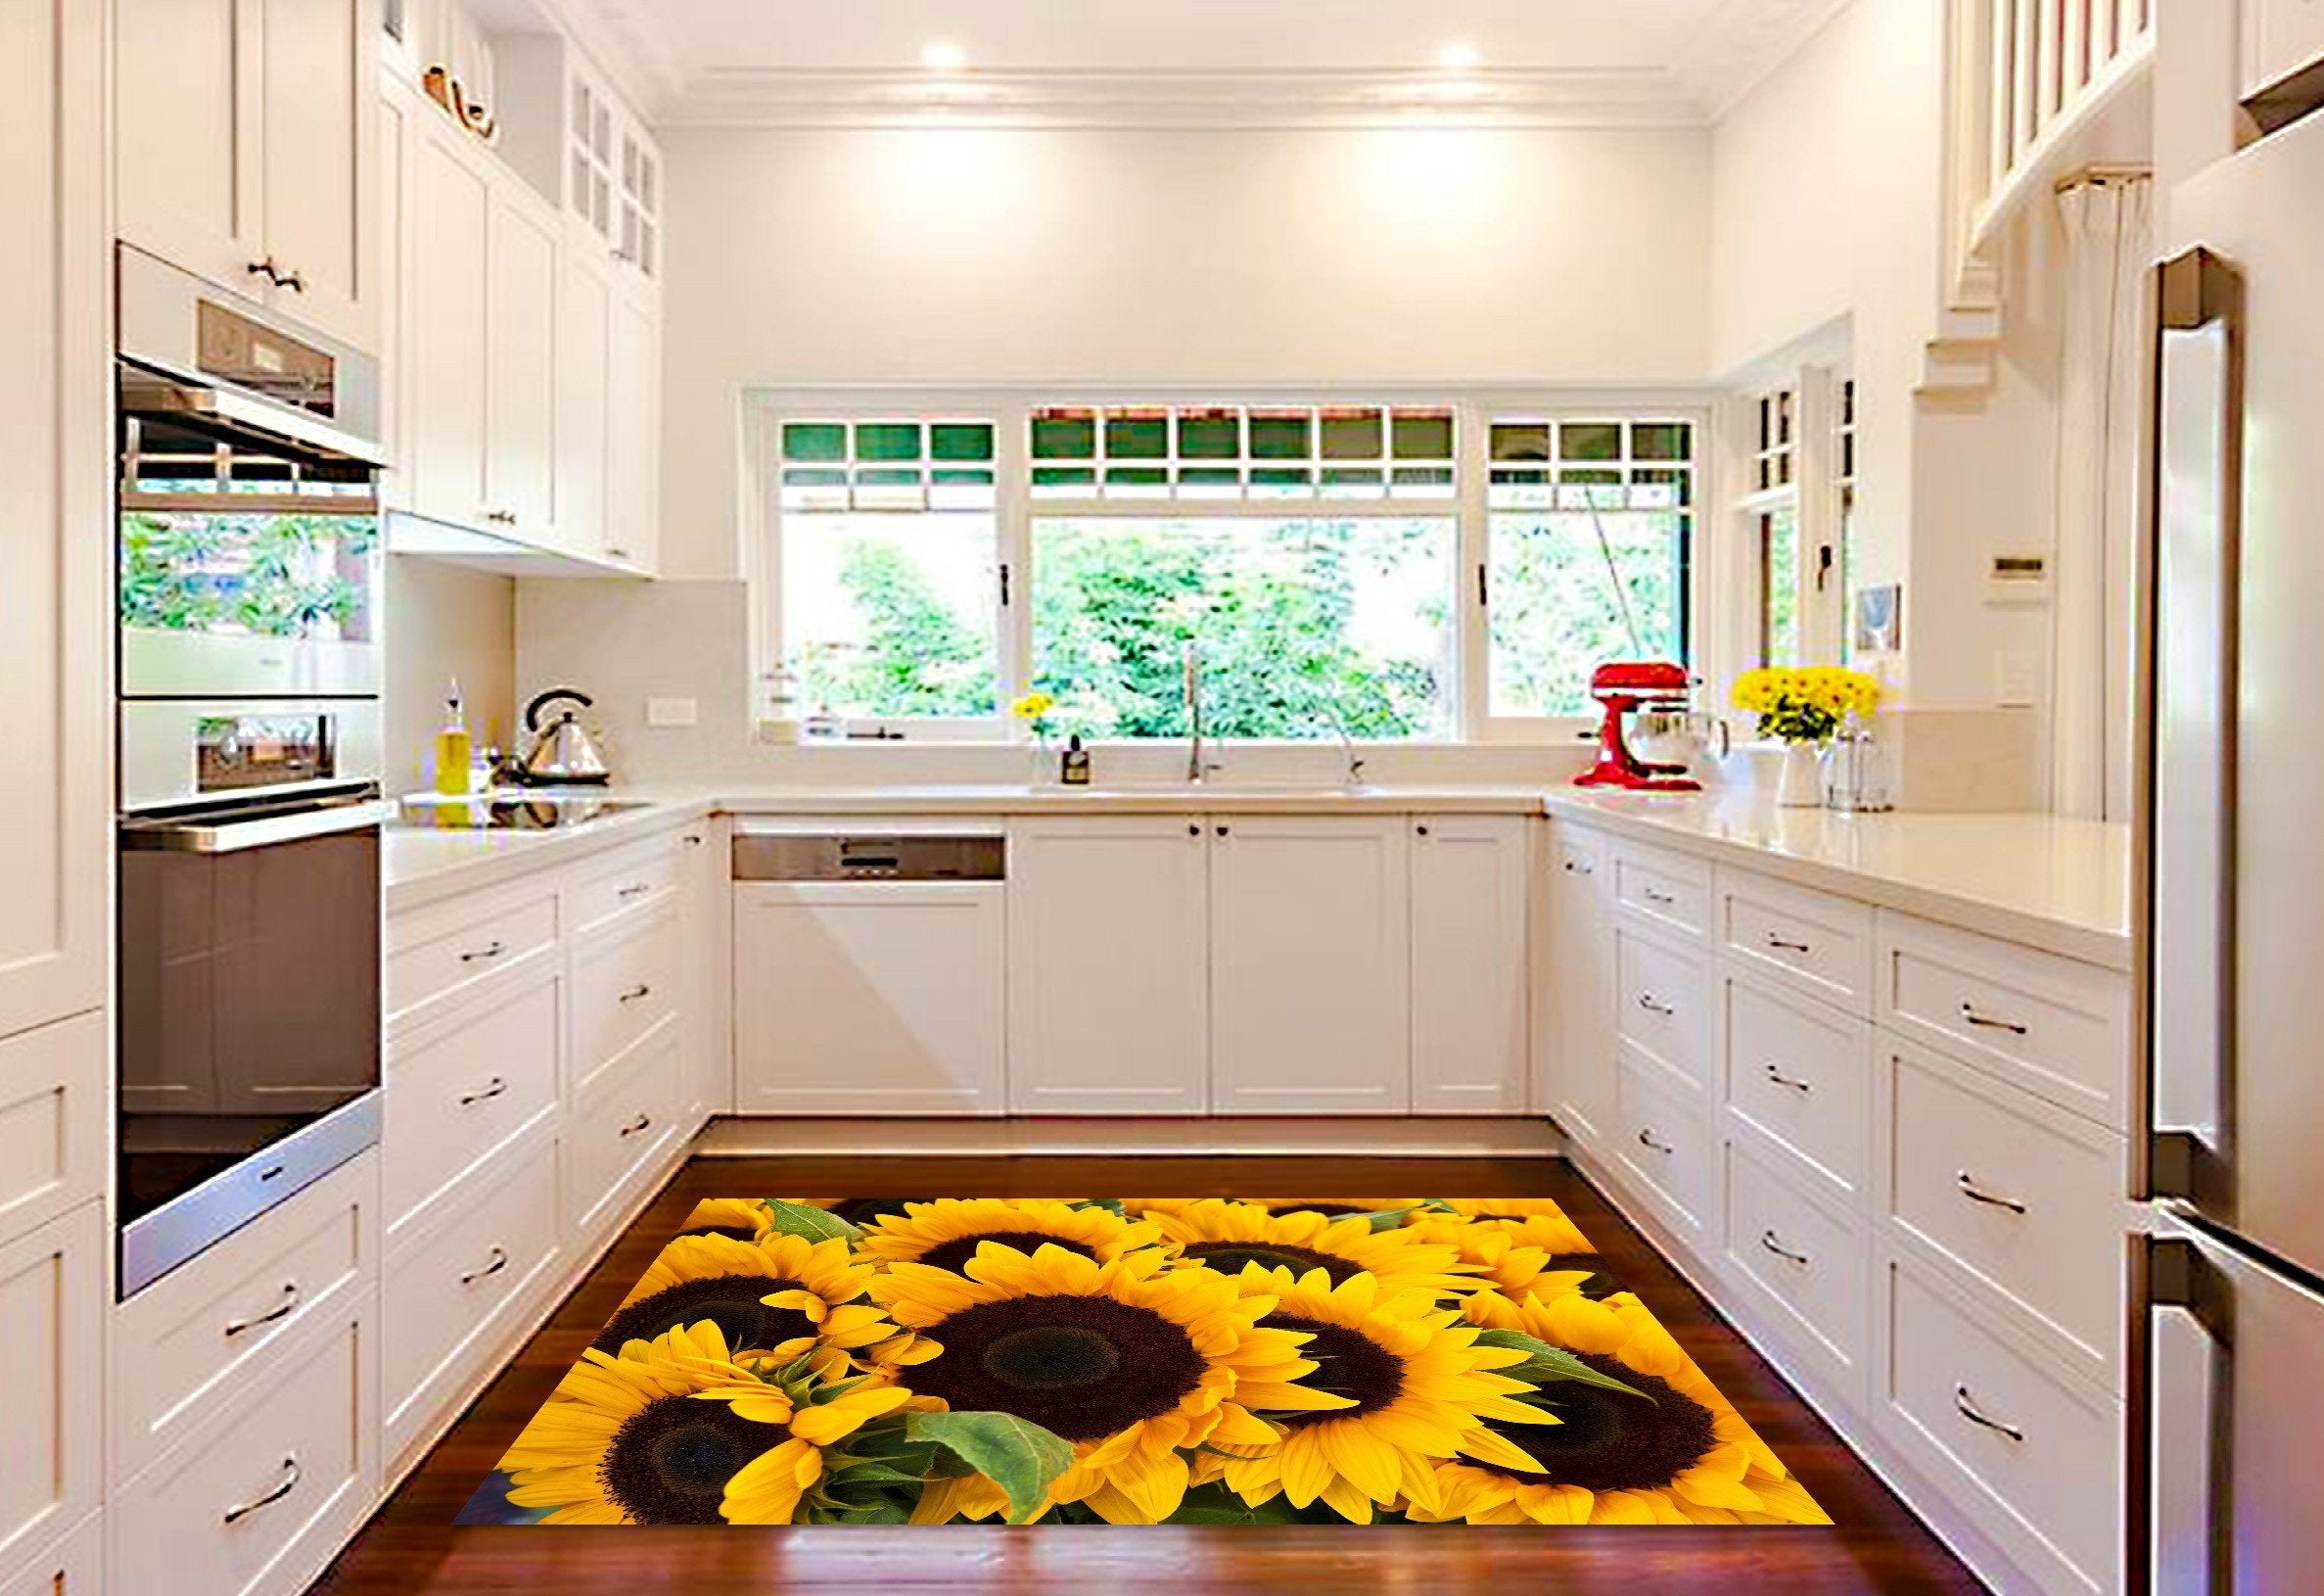 3D Lush Sunflowers 044 Kitchen Mat Floor Mural Wallpaper AJ Wallpaper 